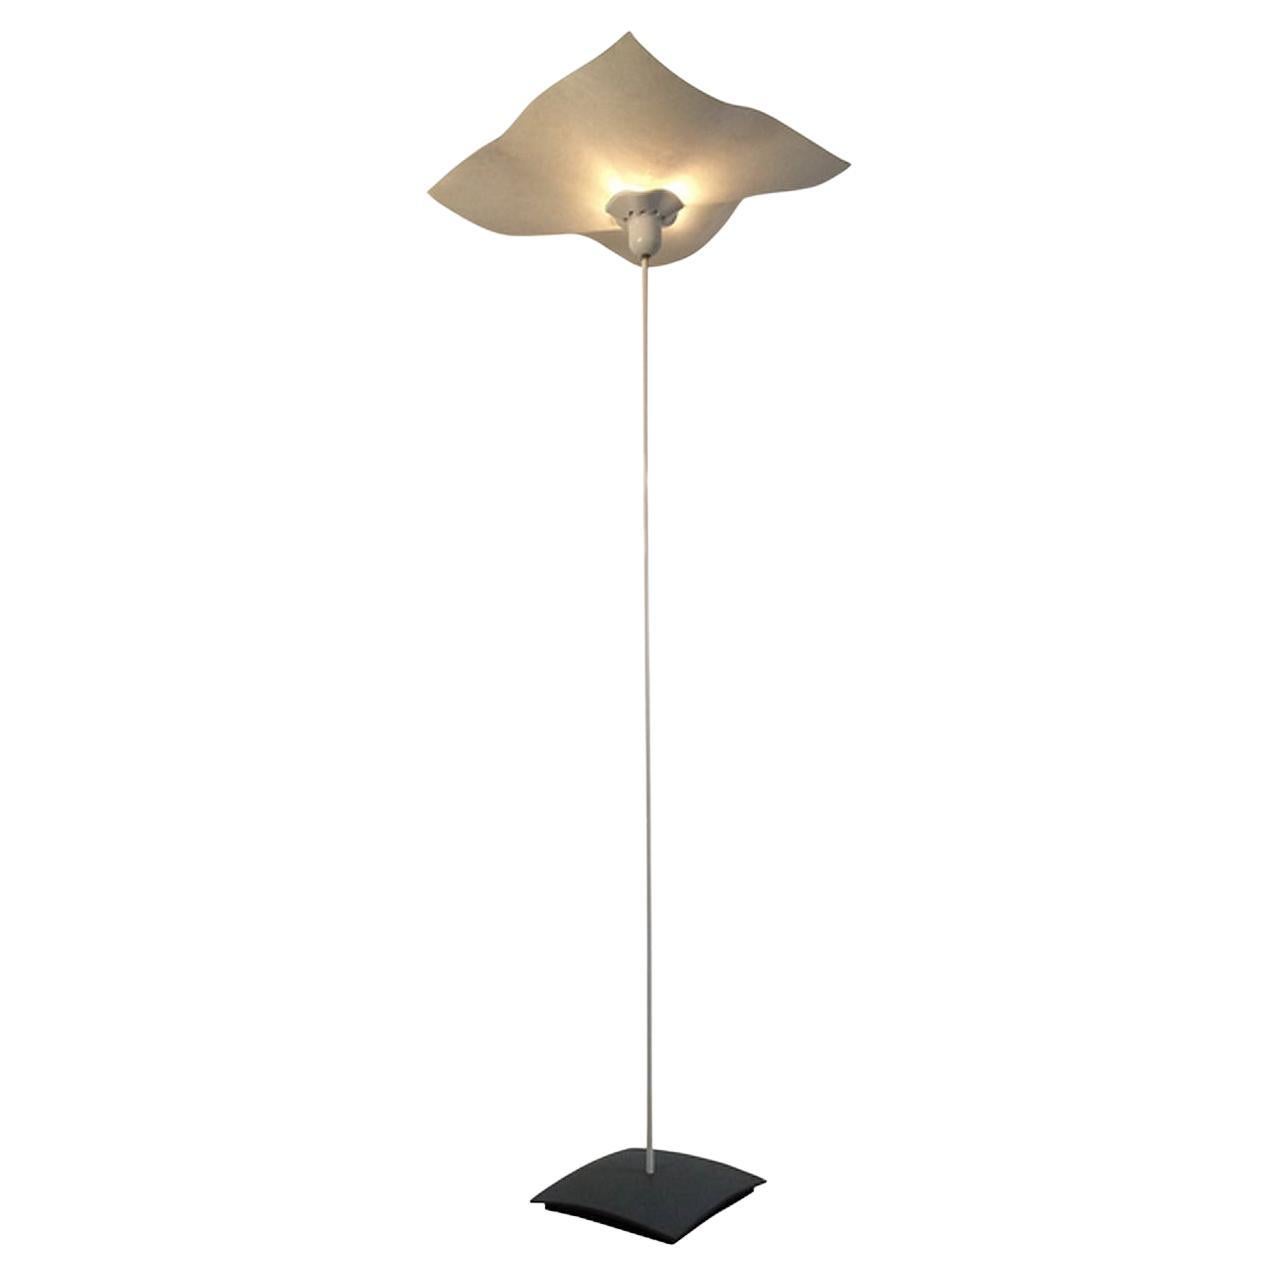 Stehlampe von Mario Bellini für Artemide, ikonisches Design der 1970er Jahre